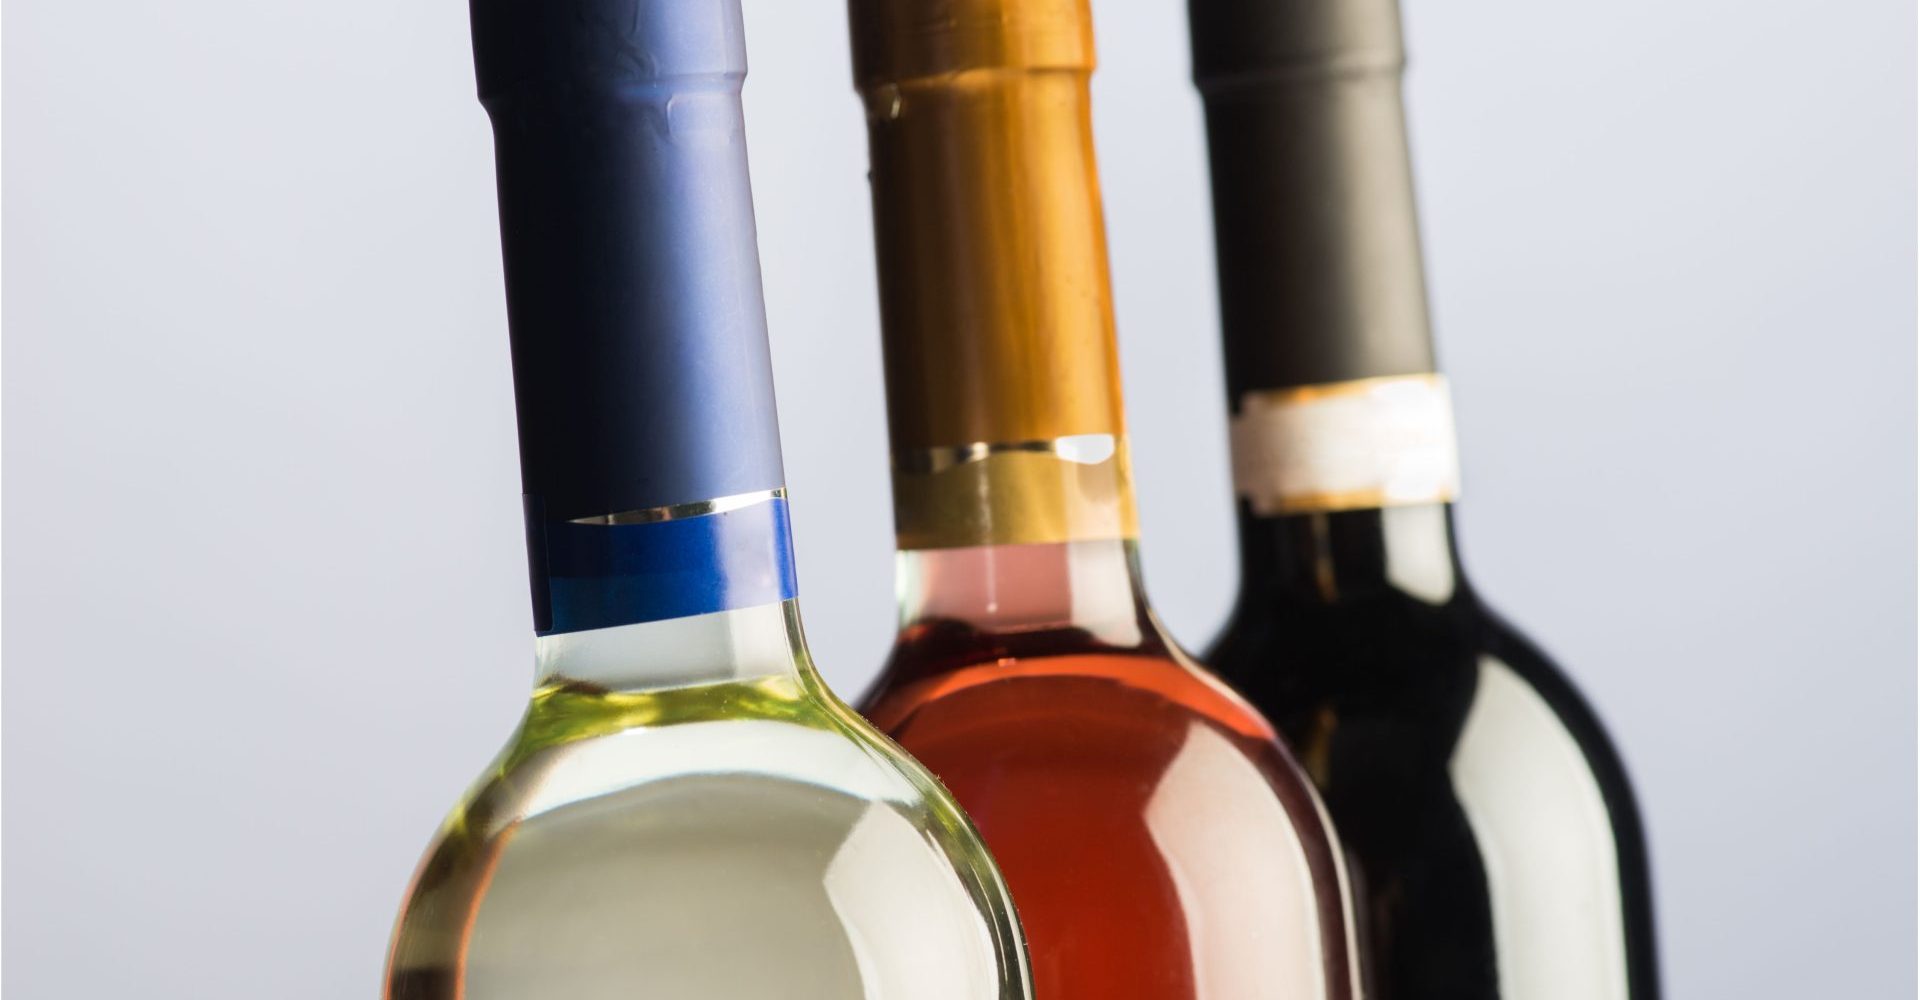 Accords produits et alcools de la région : un must pour les fêtes!